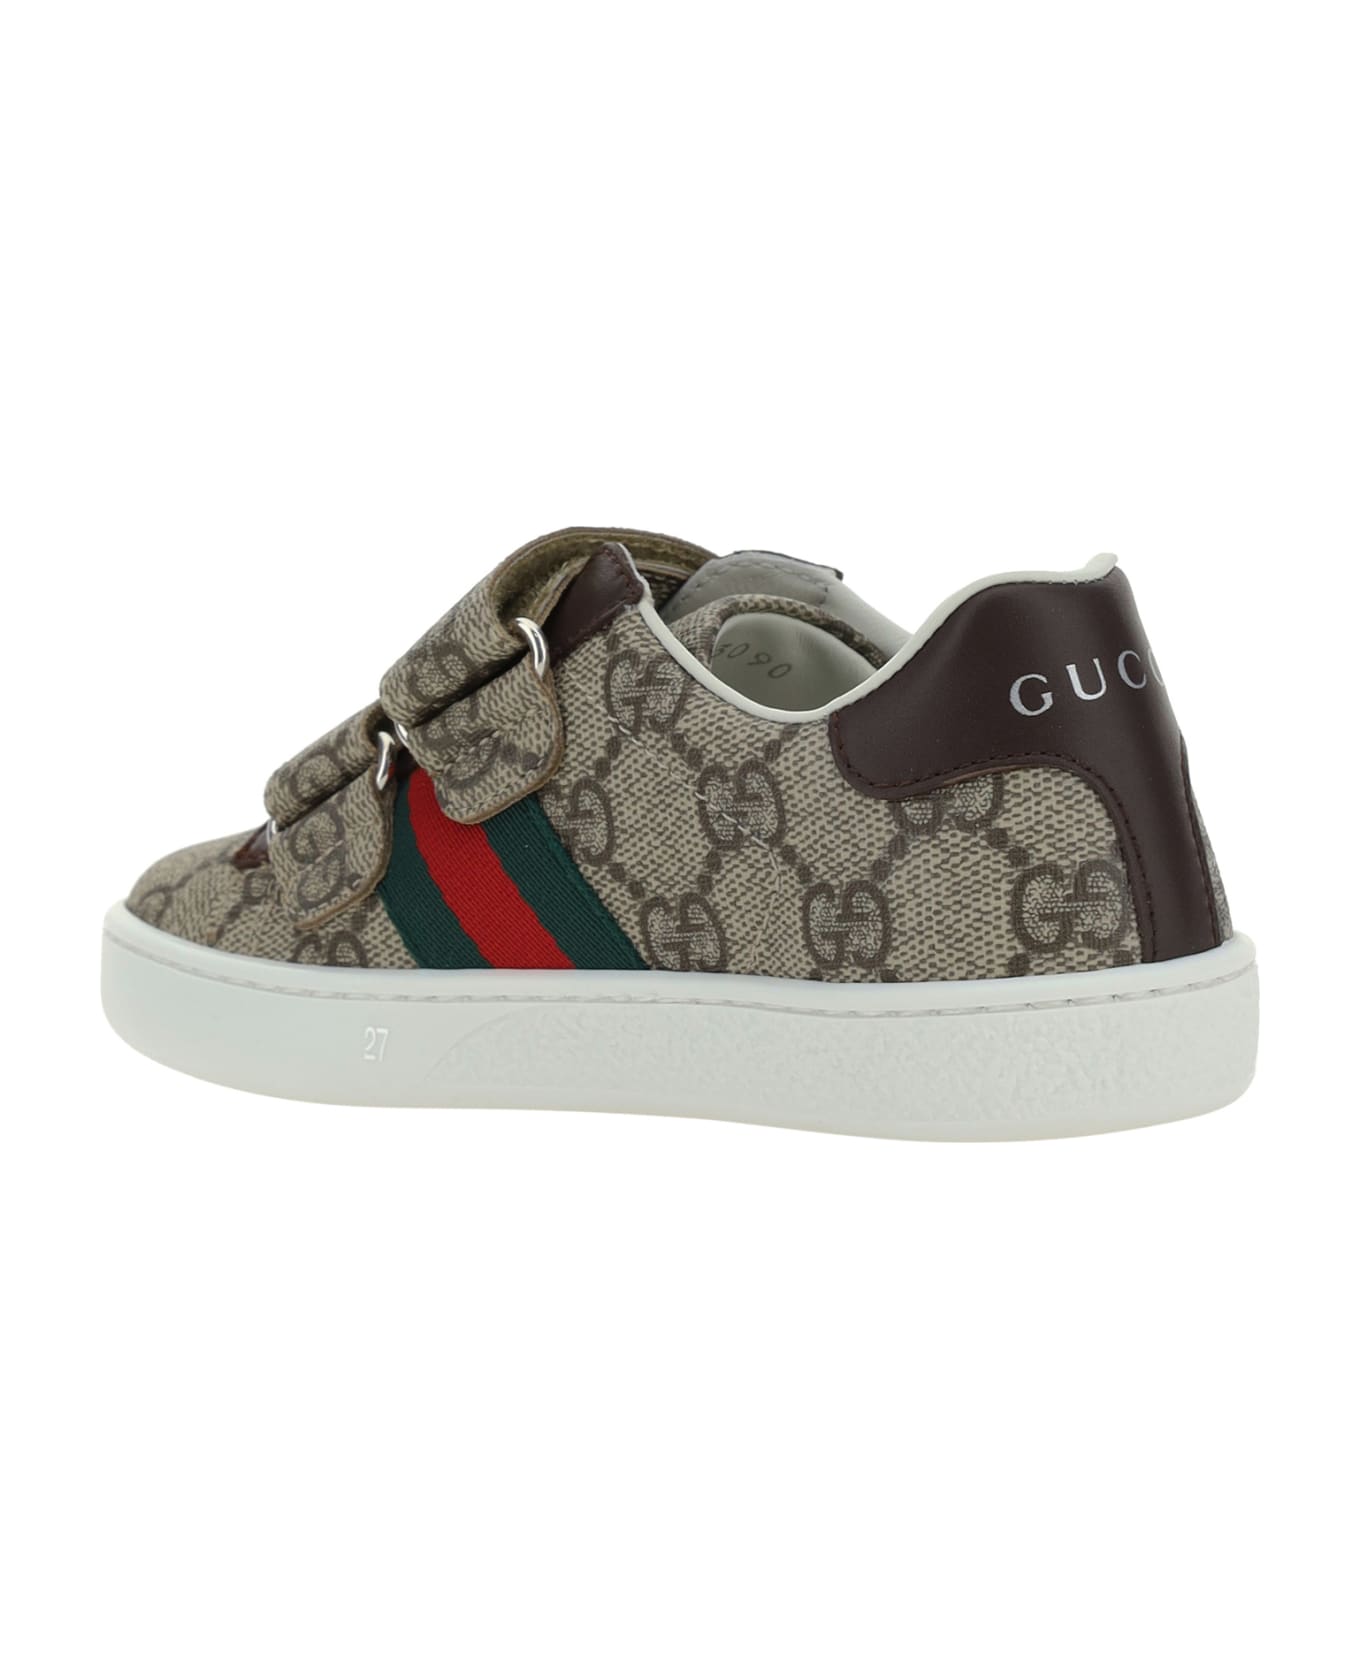 Gucci Sneakers For Boy - MultiColour